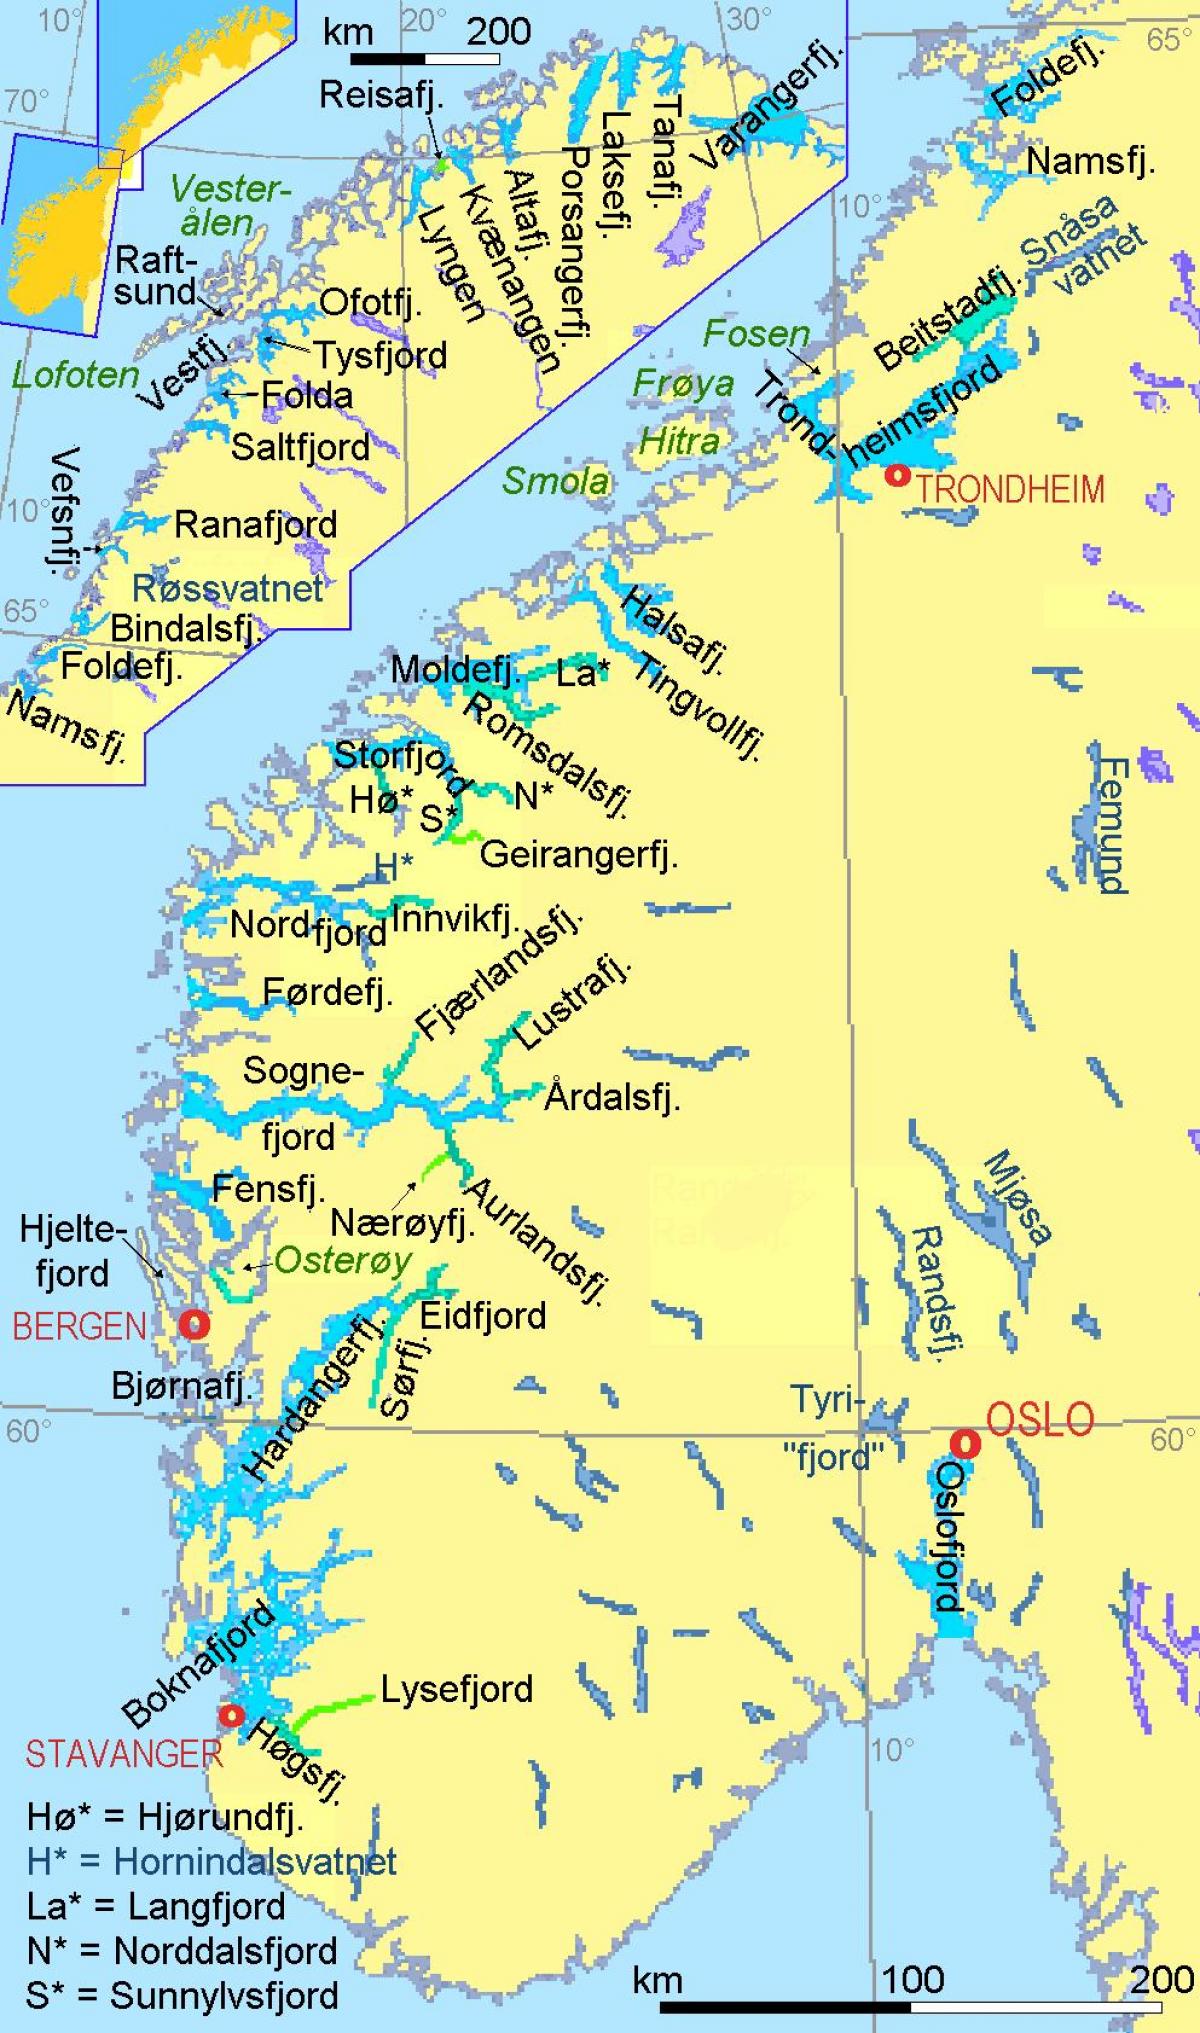 kaart van Noorwegen fjorden tonen